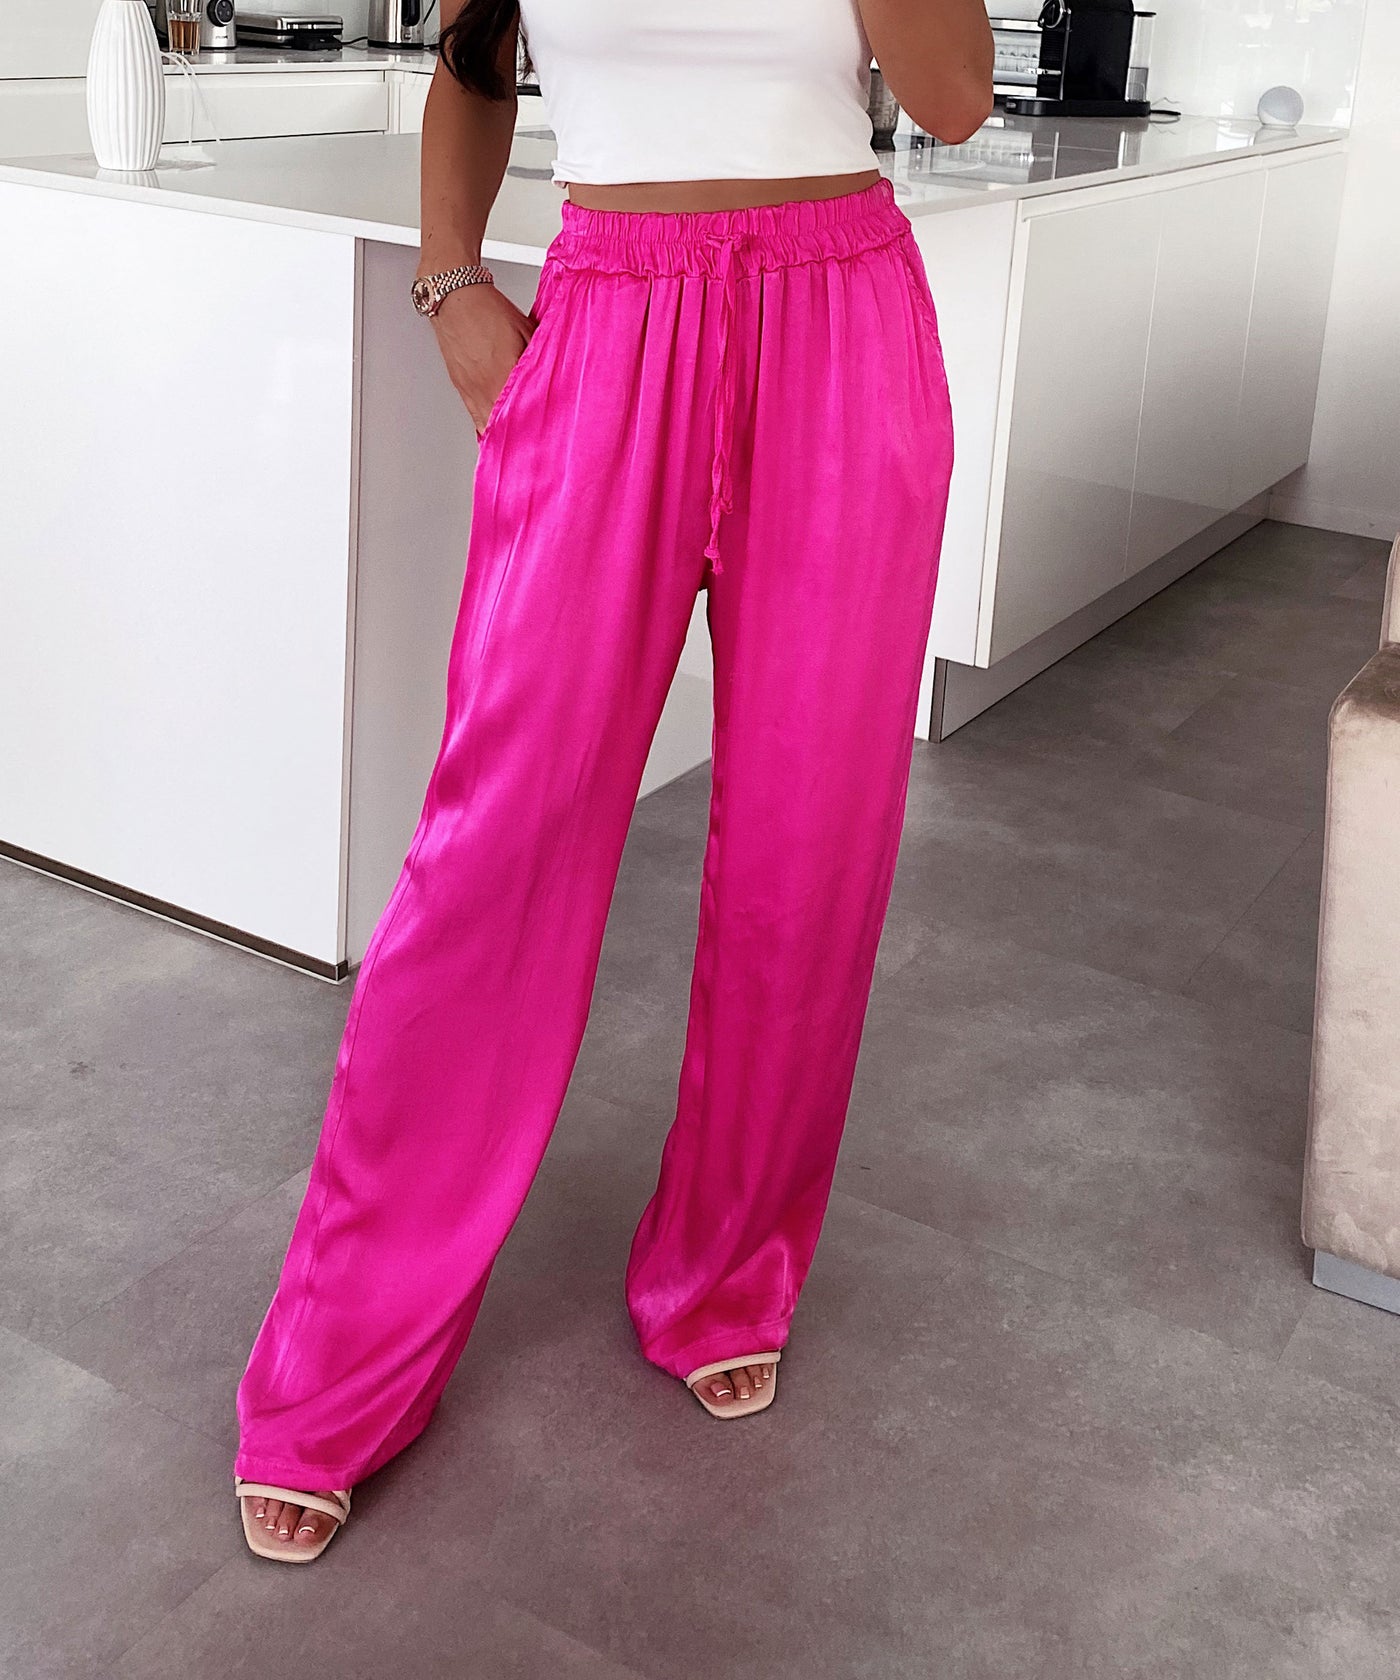 Satin Hose Alisa Pink  Ladypolitan - Fashion Onlineshop für Damen   